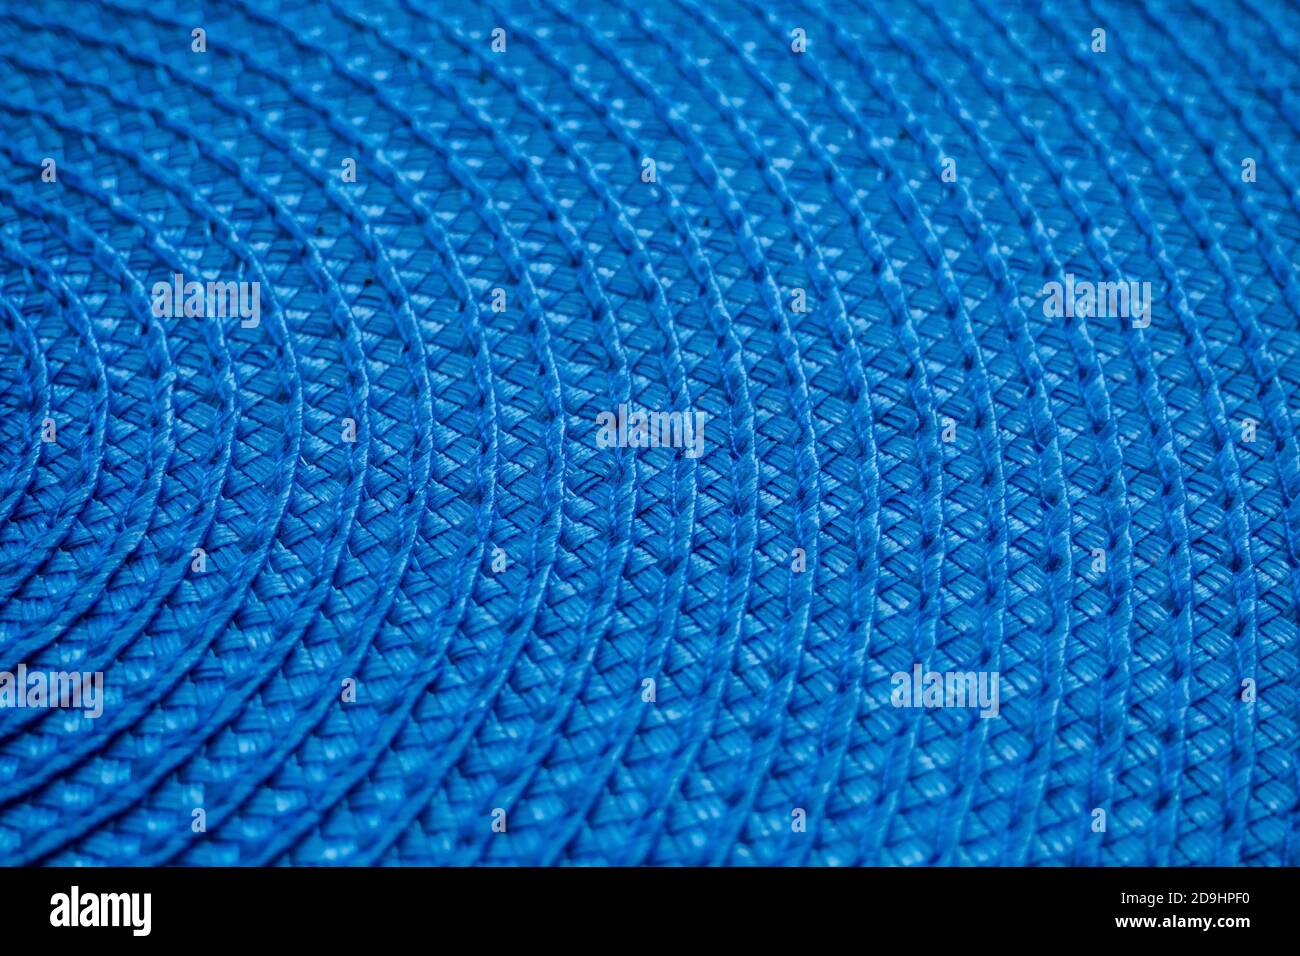 Nahaufnahme eines Teils der blauen runden gewebten Textilmatte. Abstrakter Hintergrund, selektiver Fokus Stockfoto